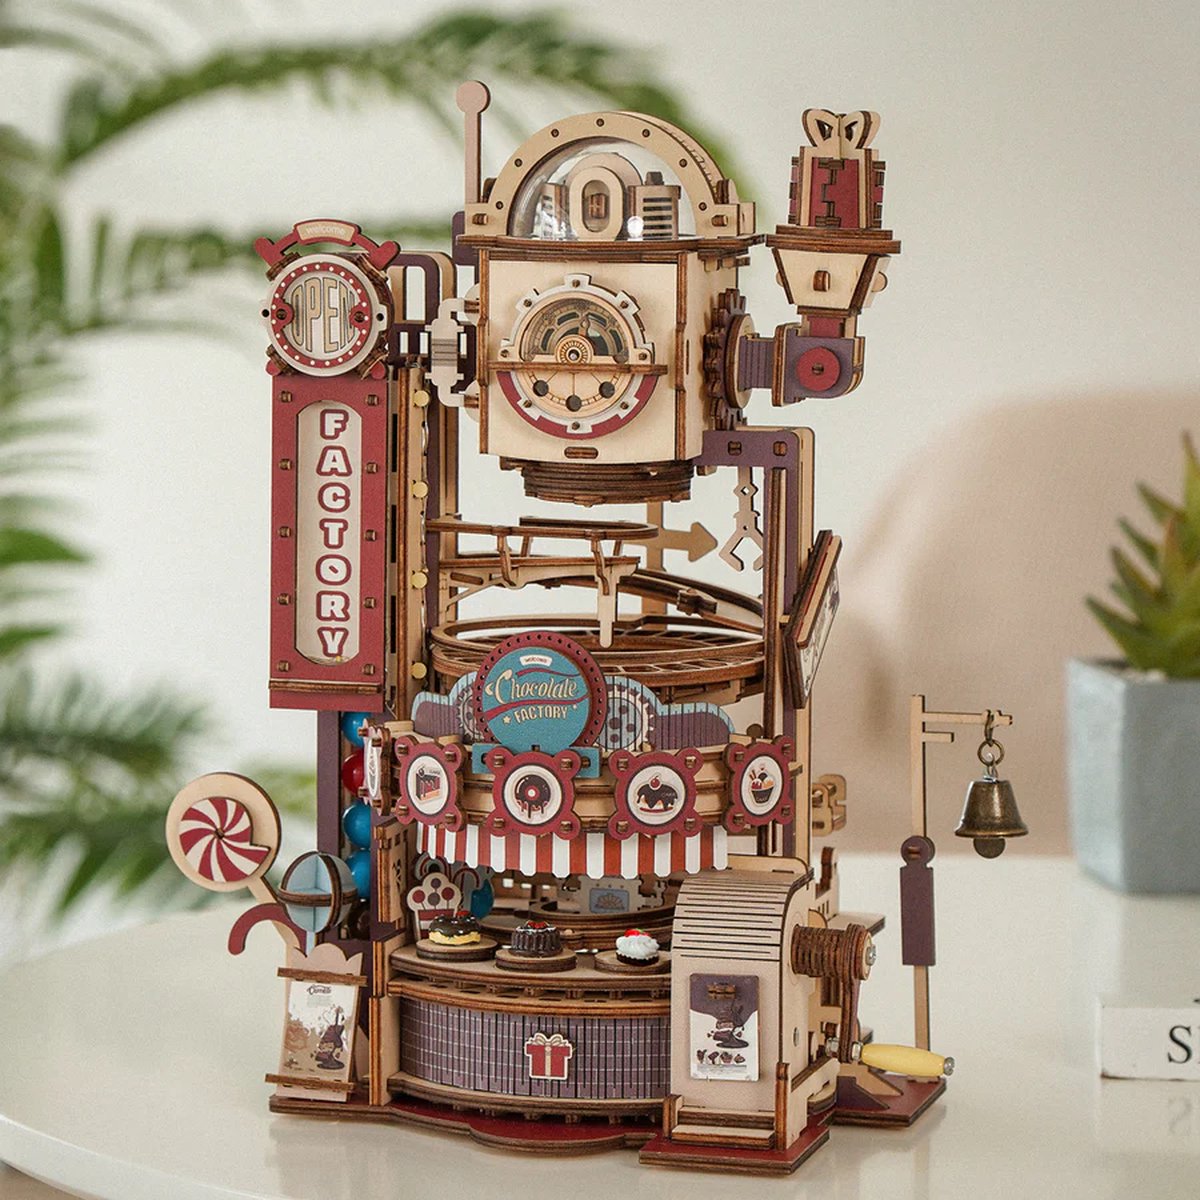 Robotime - Chocolate Factory Marble Run - Chocoladefabriek - Knikkerbaan - Houten modelbouw - Modelbouw - DIY - Hout 3D puzzel - Vrije tijd - Educatief - Ontspanning - Tot rust komen - Houten puzzel